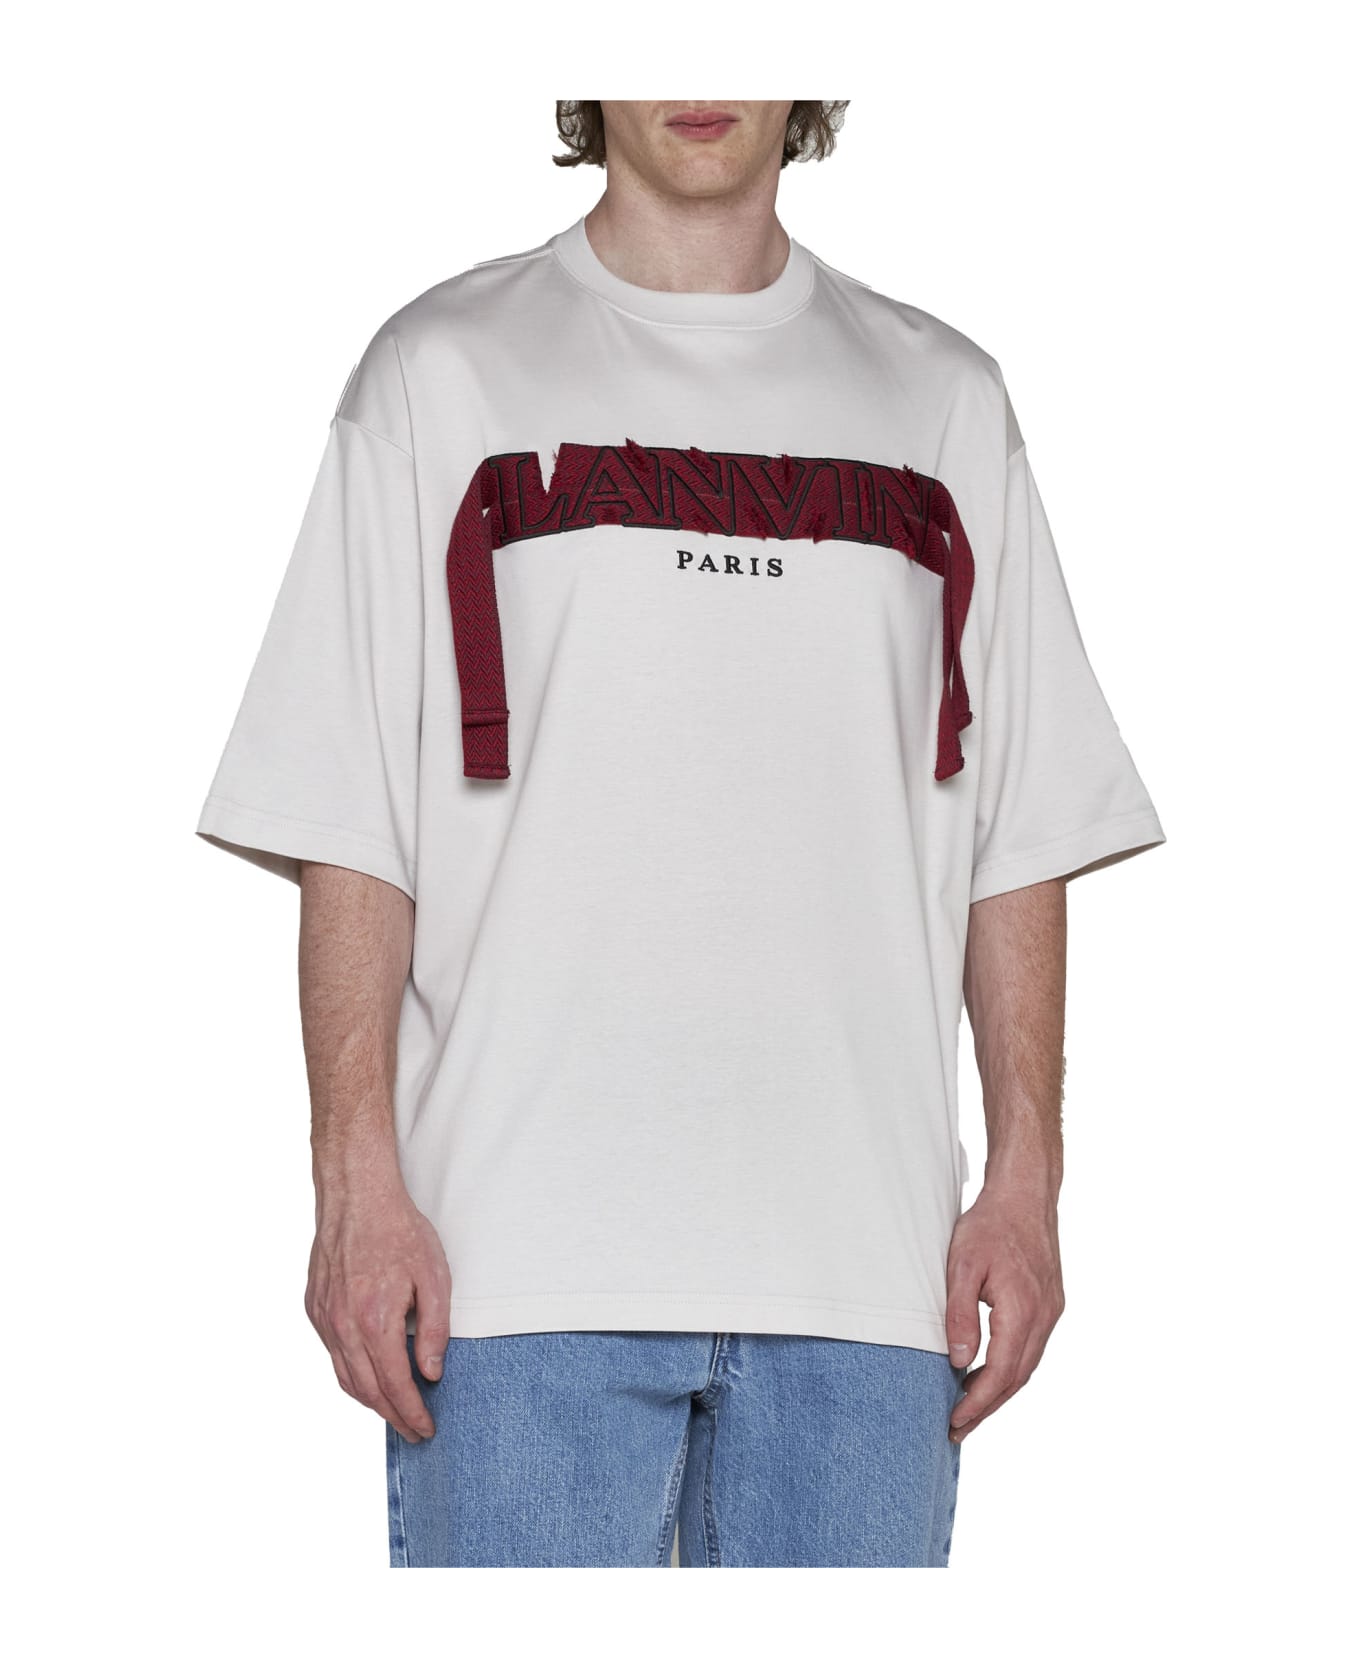 Lanvin T-Shirt - Mastic